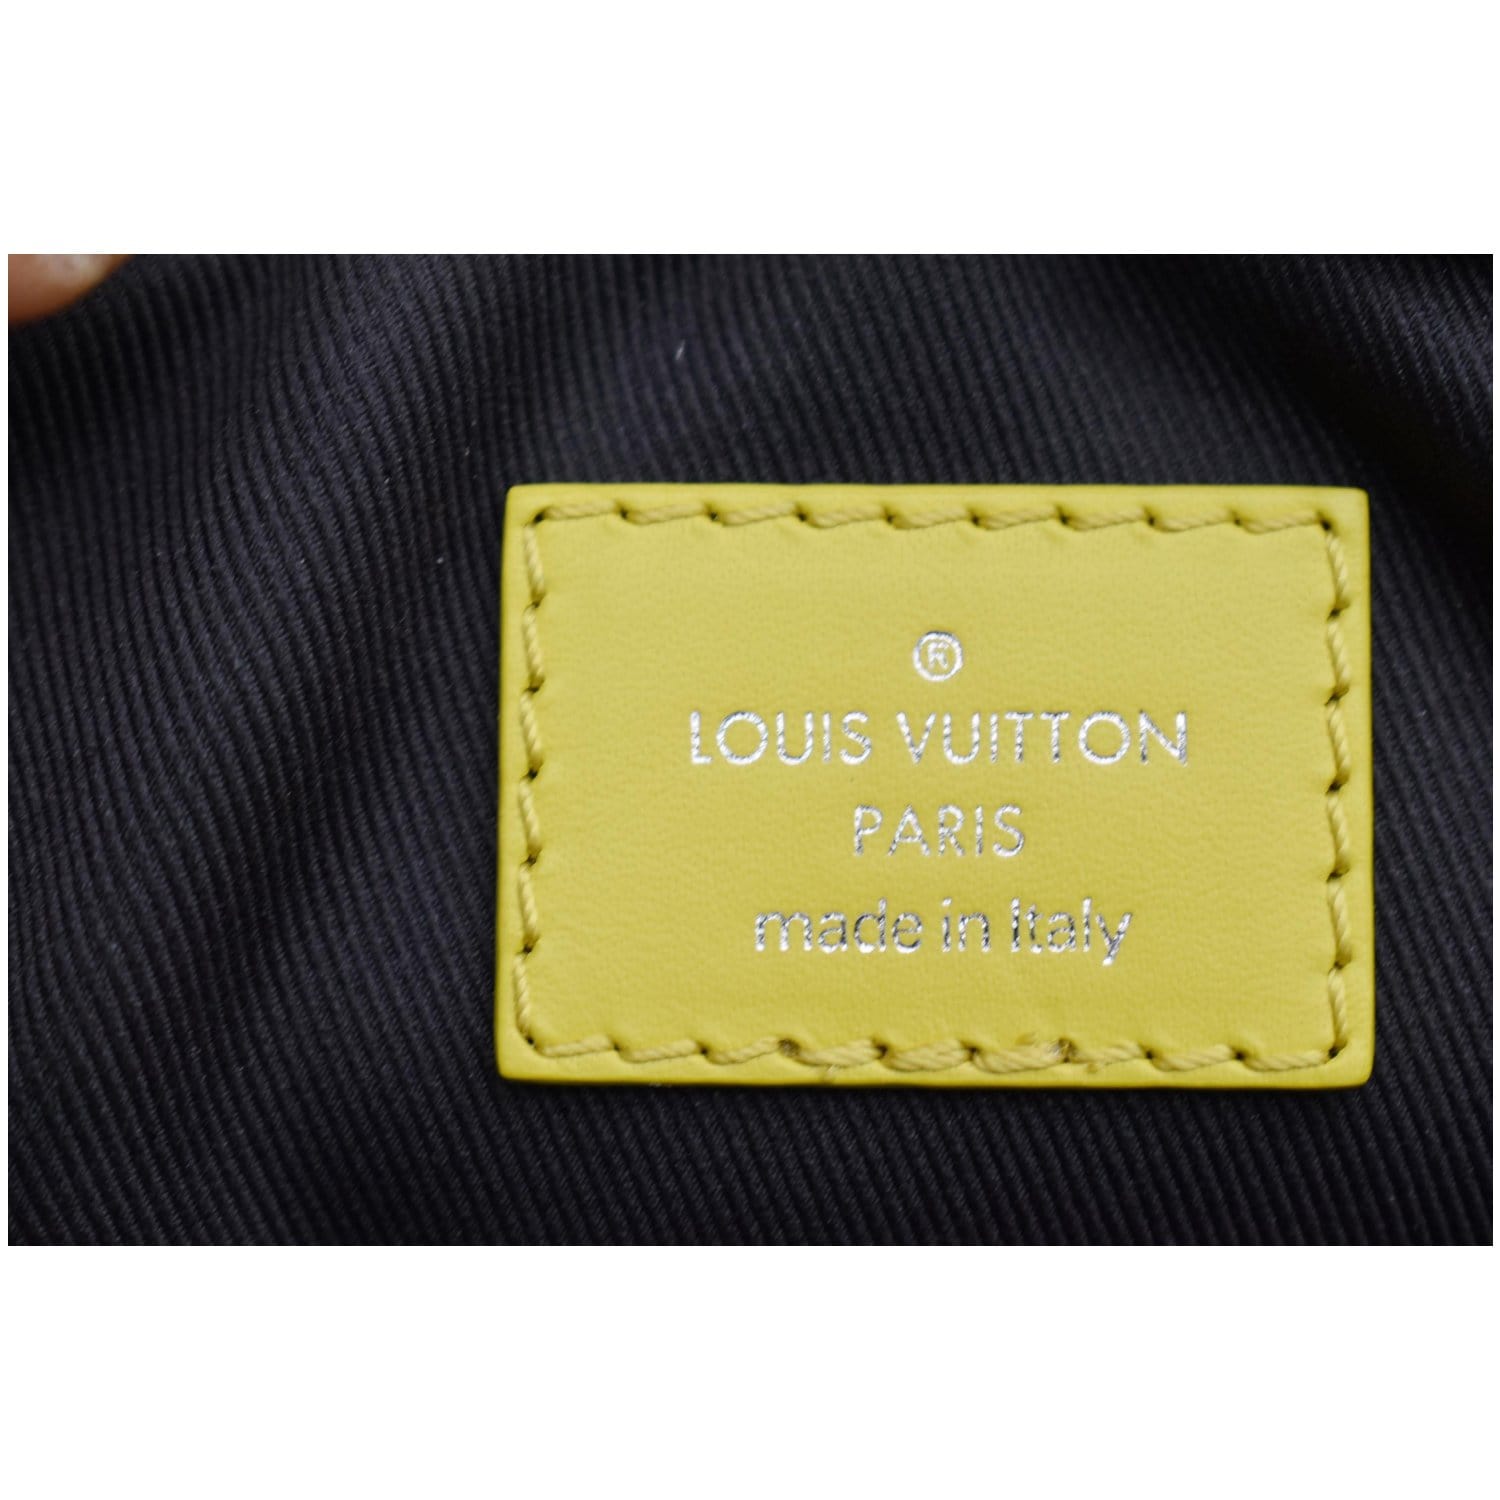 Louis Vuitton, Bags, Authentic Louis Vuitton Slim Purse